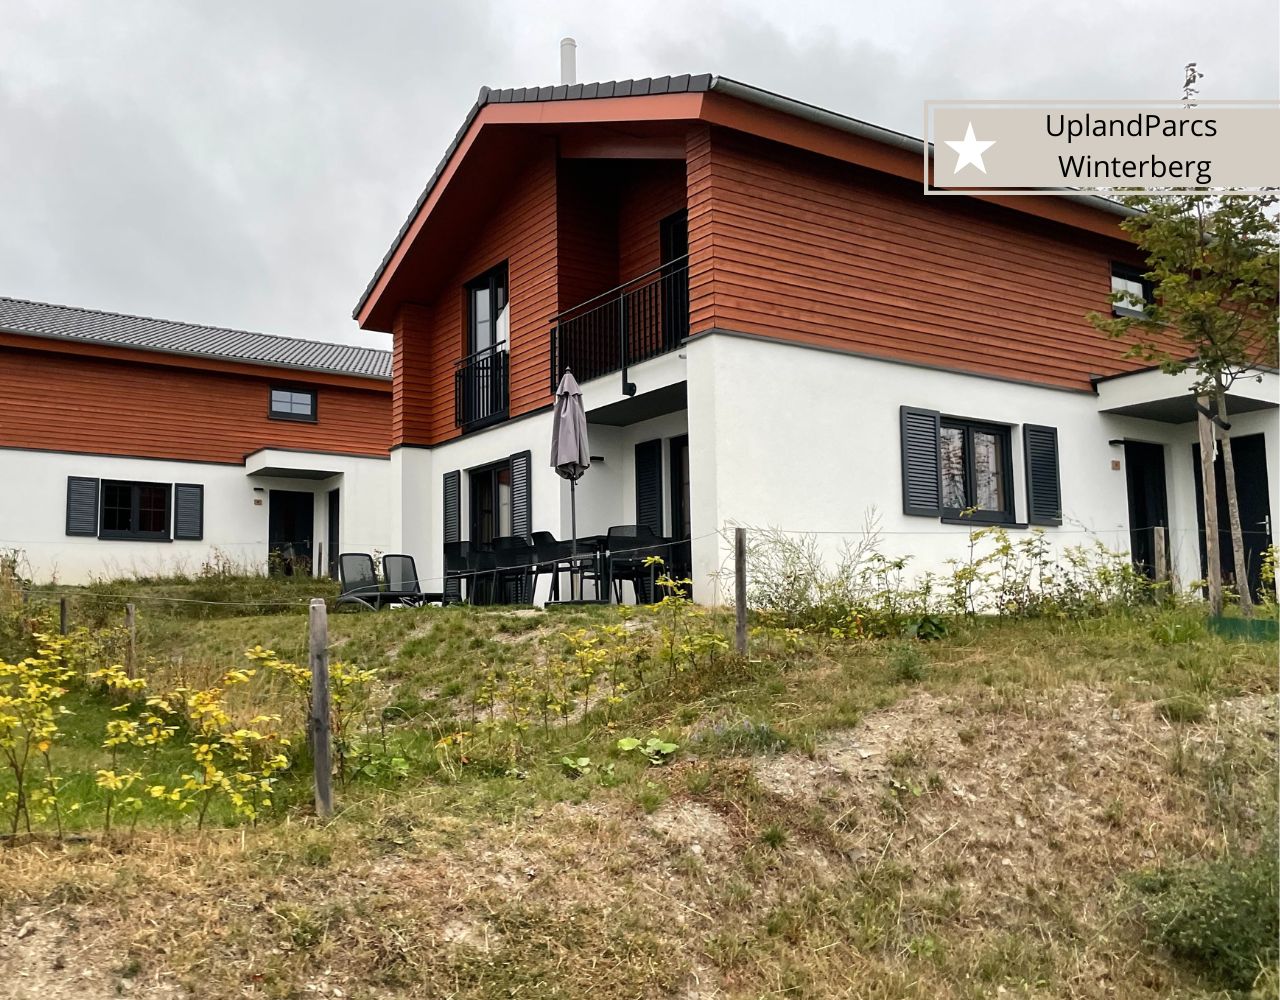 Familienfreundliche Ferienanlage mit Kinder in Winterberg-UplandParcs Winterberg mit Ferienhäzser über 100 qm und Cottages um die 72 qm der Nähe